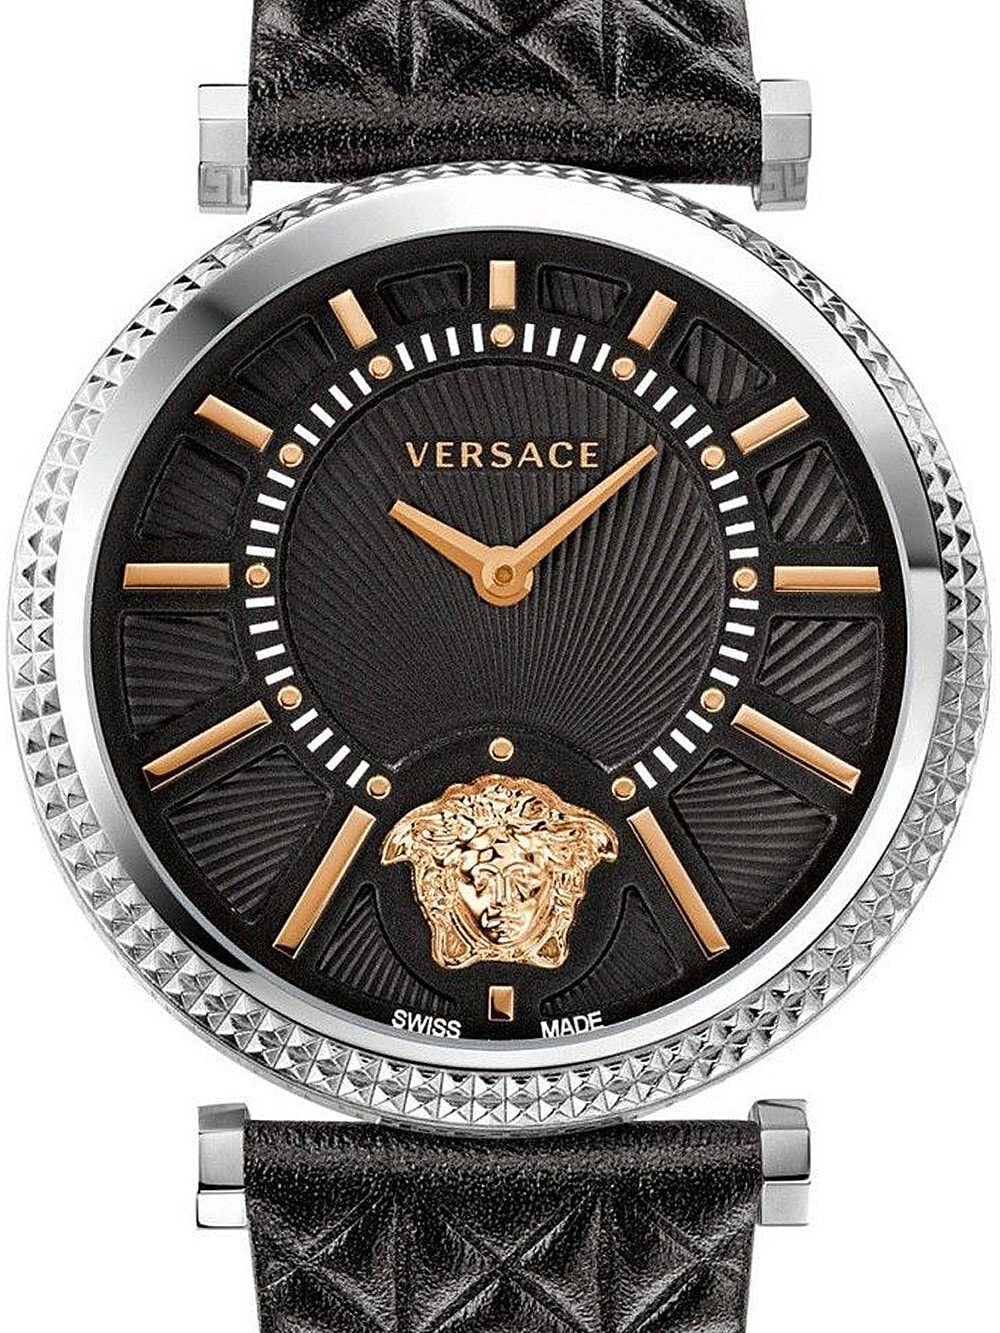 Женские наручные кварцевые часы Versace  Безель декорирован гравировкой Clous de Paris.  кожаный ремешок Водозащита 30WR. Стекло сапфировое.